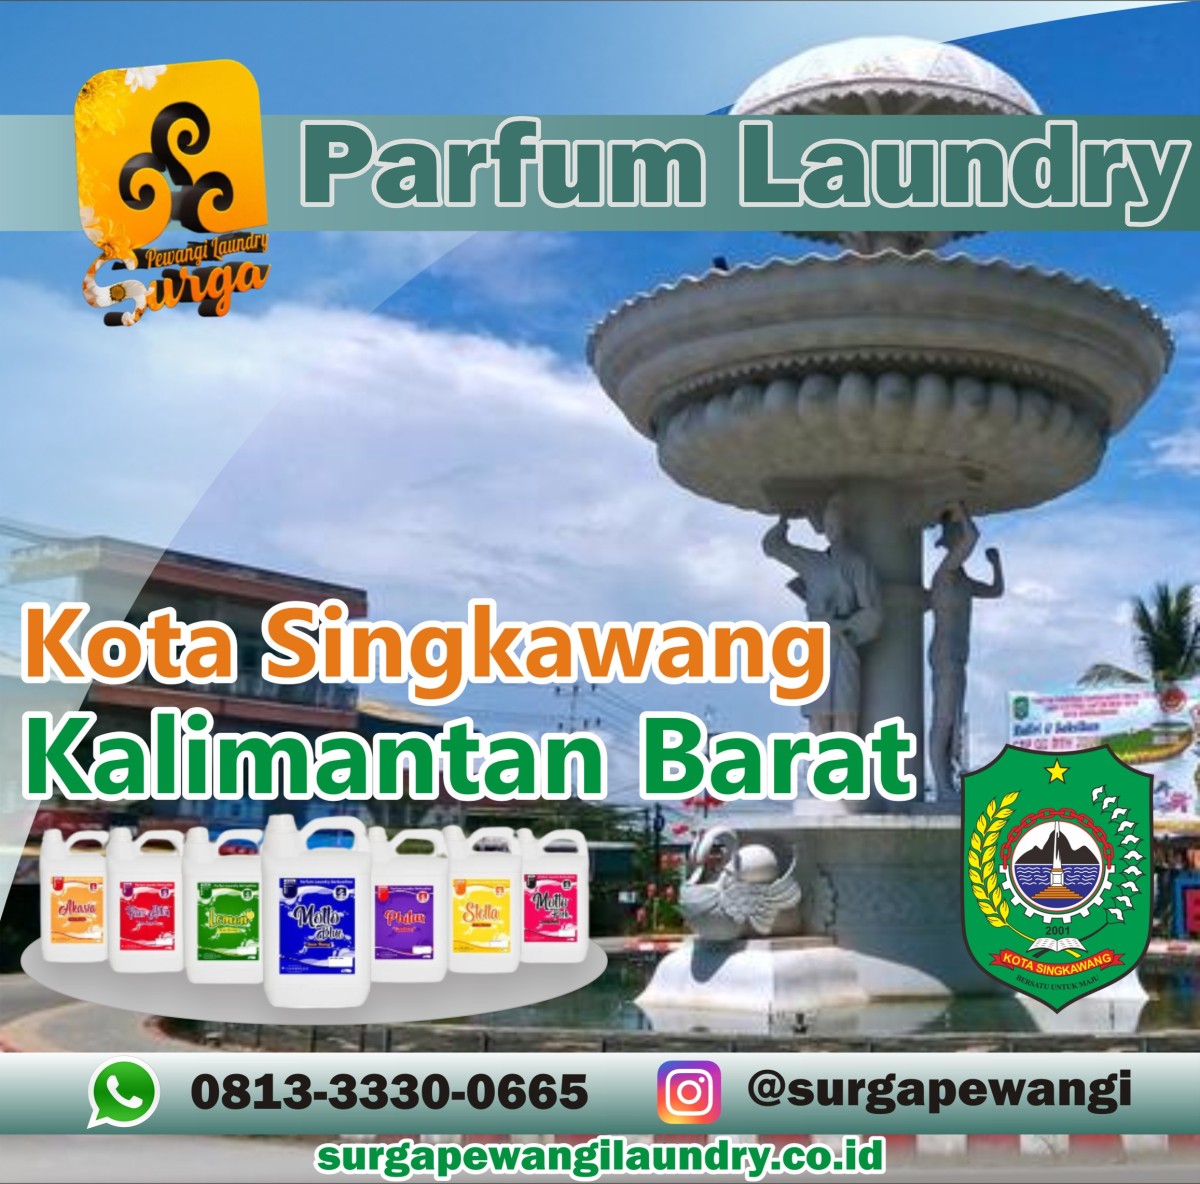 Parfum Laundry Kota Singkawang, Kalimantan Barat